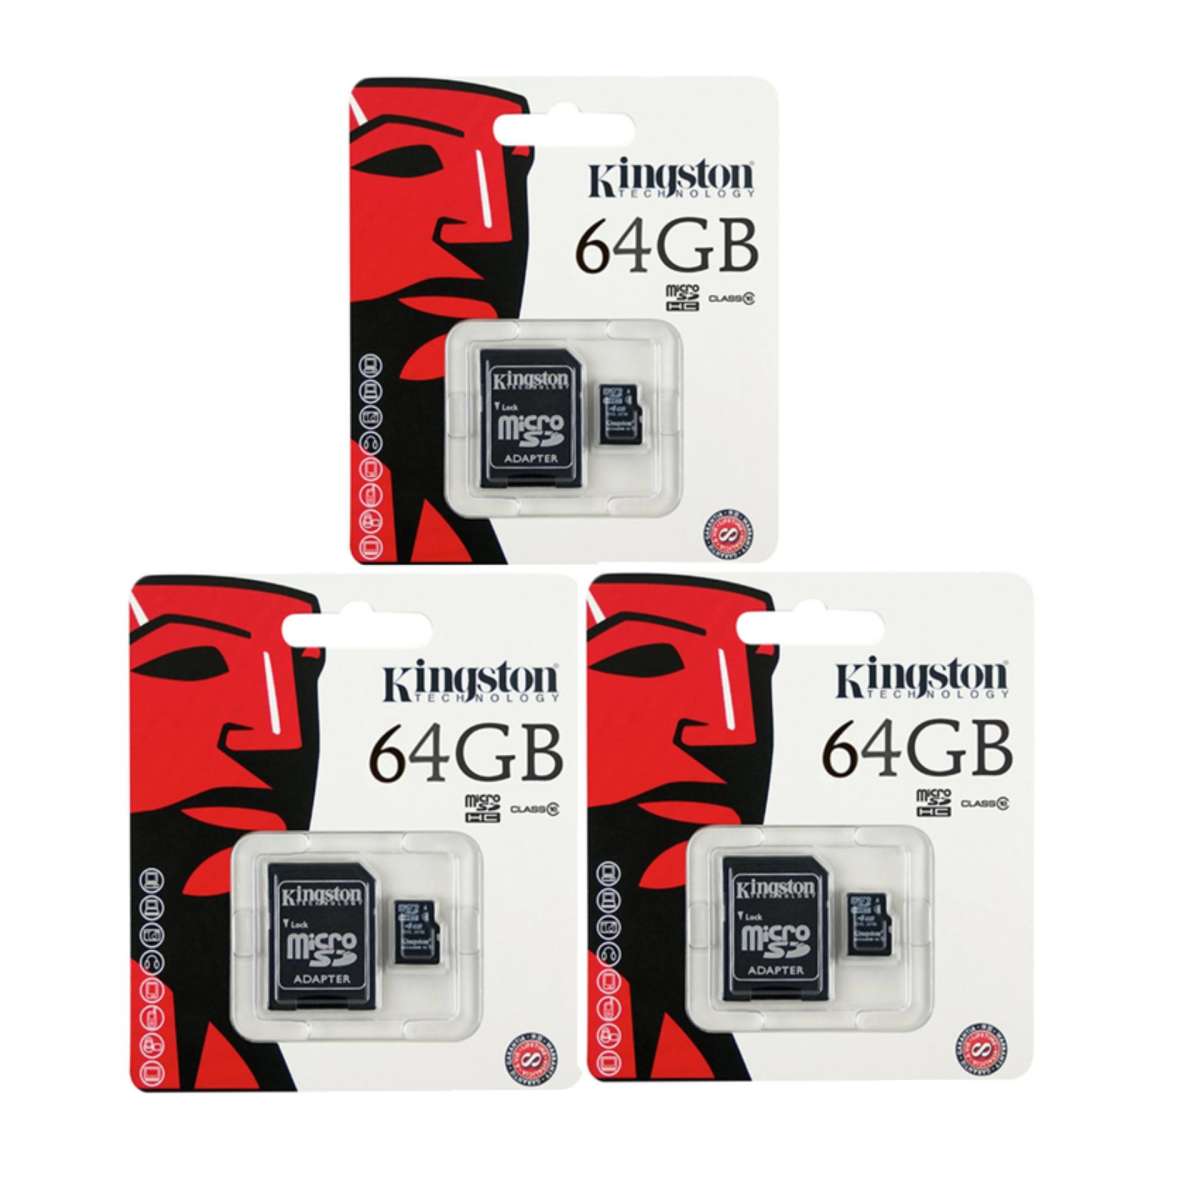 ข้อมูลเพิ่มเติมของ ถูกสุดๆ (ของแท้) Kingston เมมโมรี่การ์ด 64GB SDHC/SDXC Class 10 UHS-I Micro SD Card with Adapter